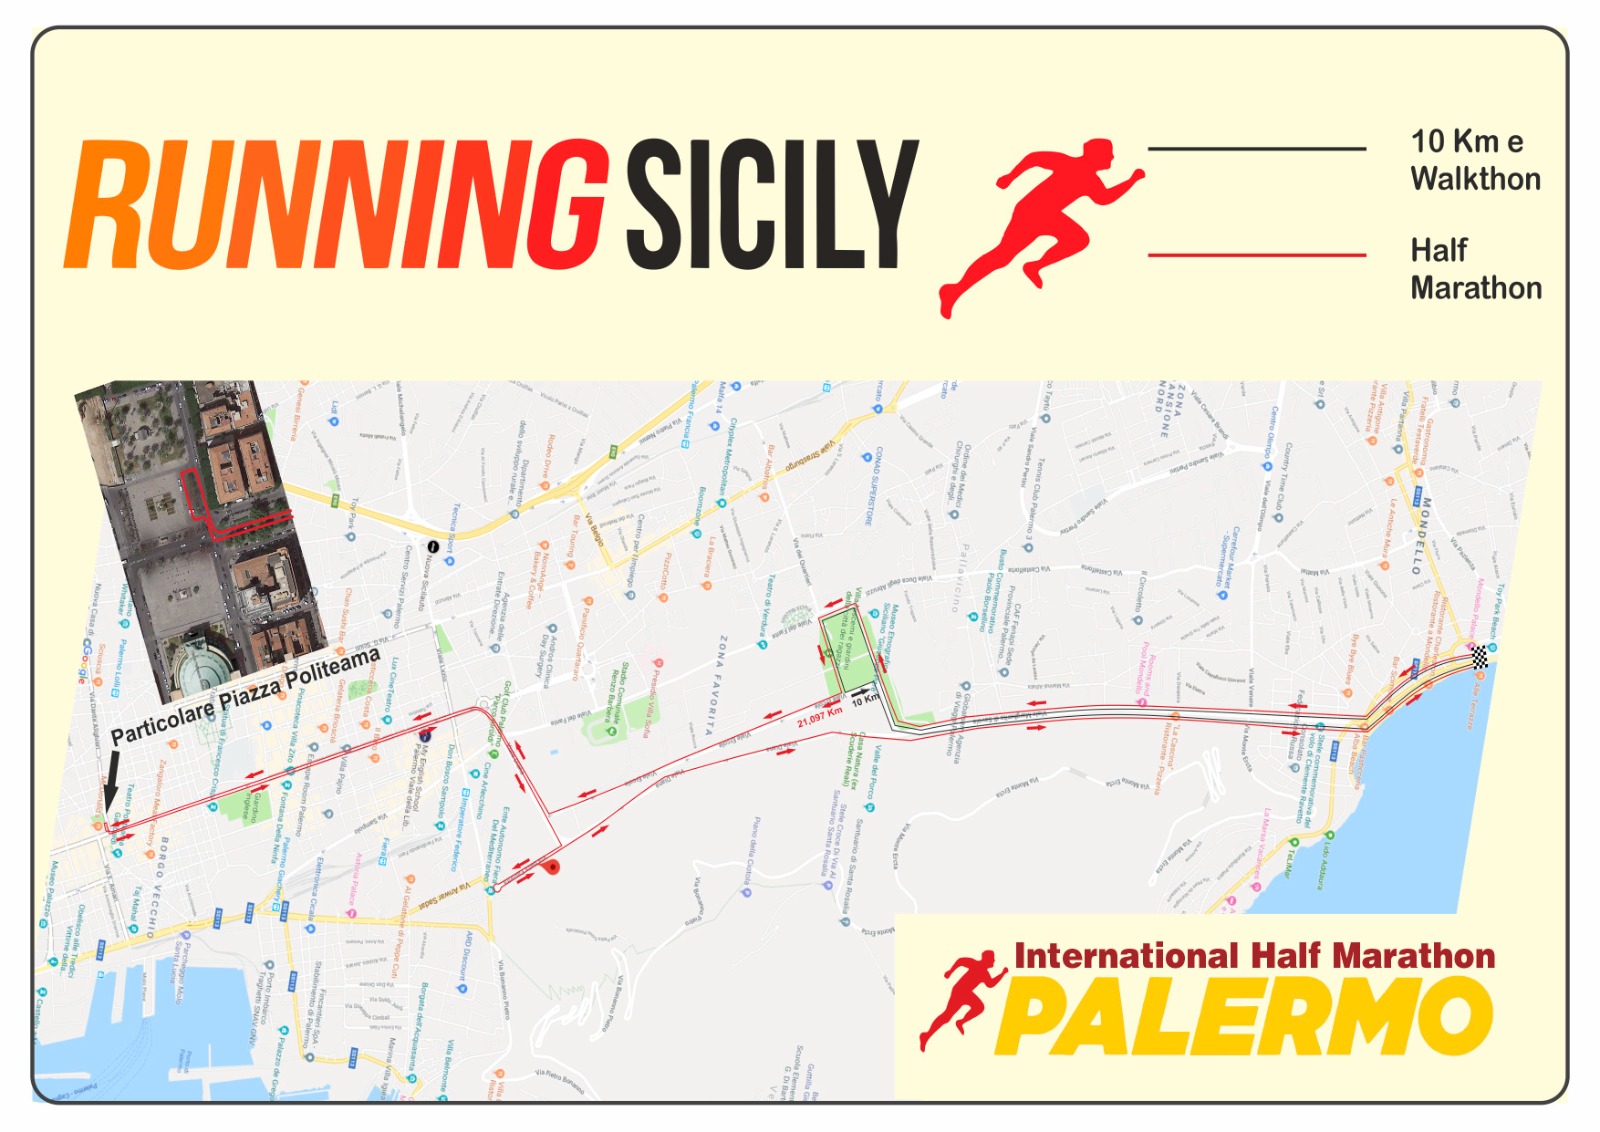 X Palermo International Half Marathon 